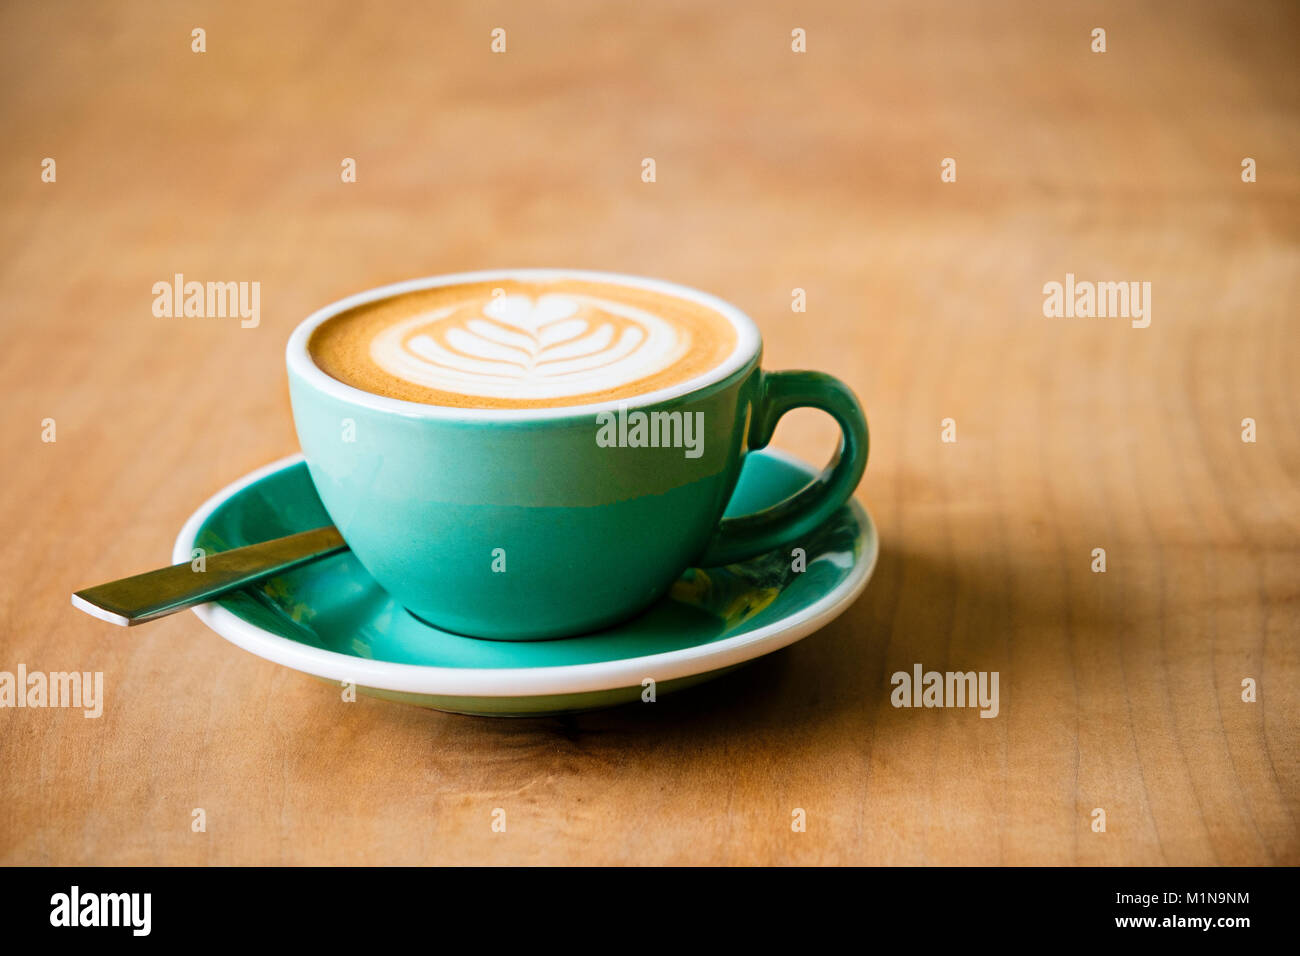 Una tazza di caffè con latte art di una foglia in schiuma con un cucchiaio su una tavola di legno Foto Stock